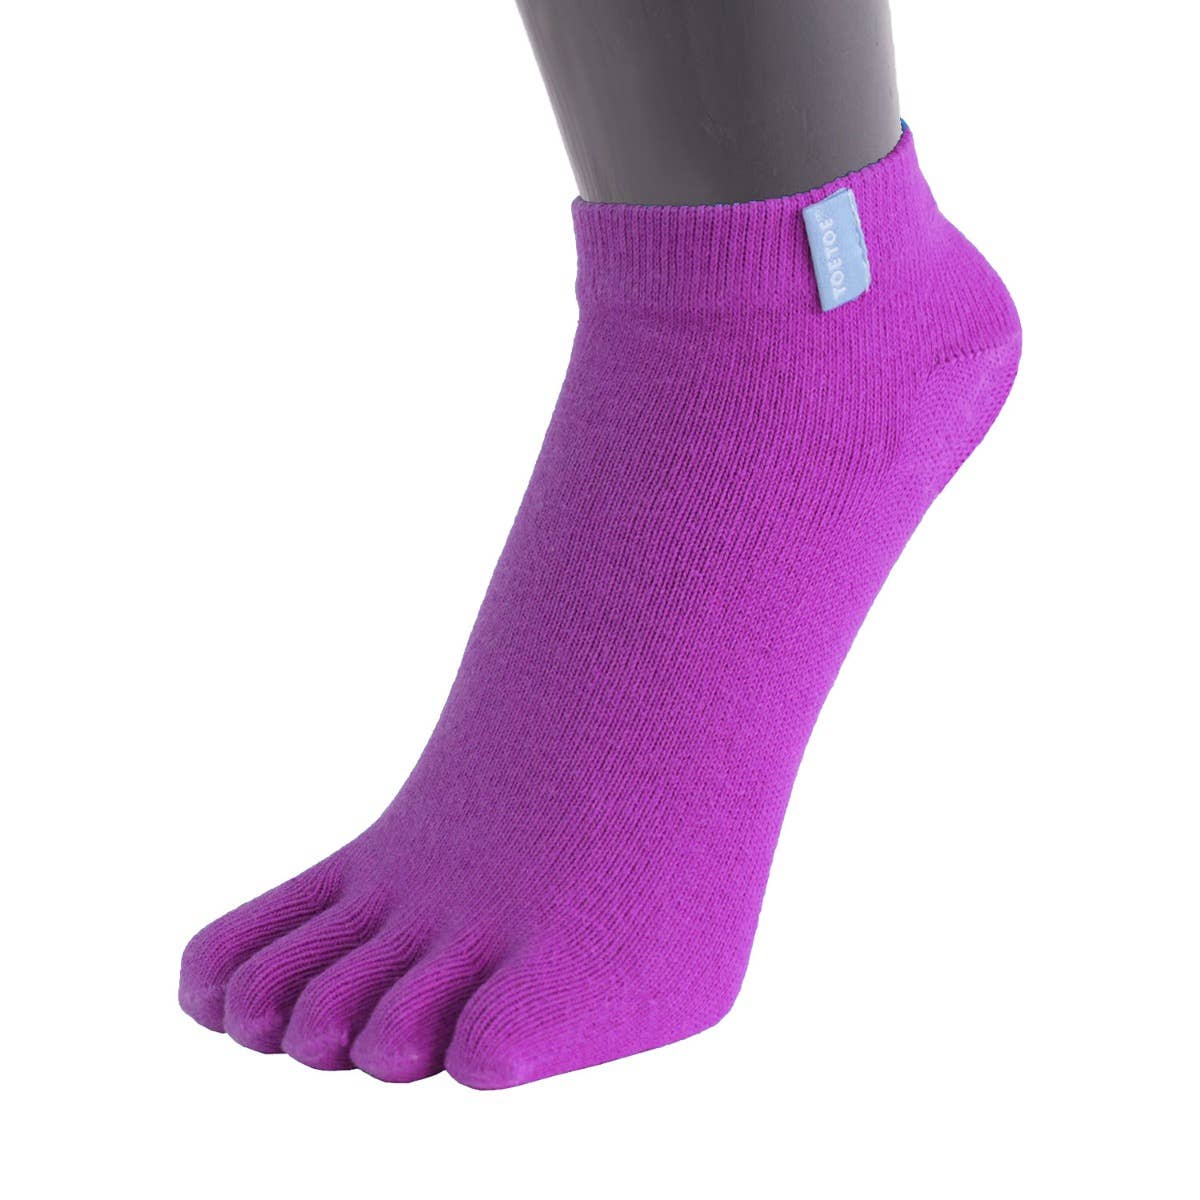 TOETOE - calcetines cortos de dedos - tallas 35-46 / Striped Turquoise